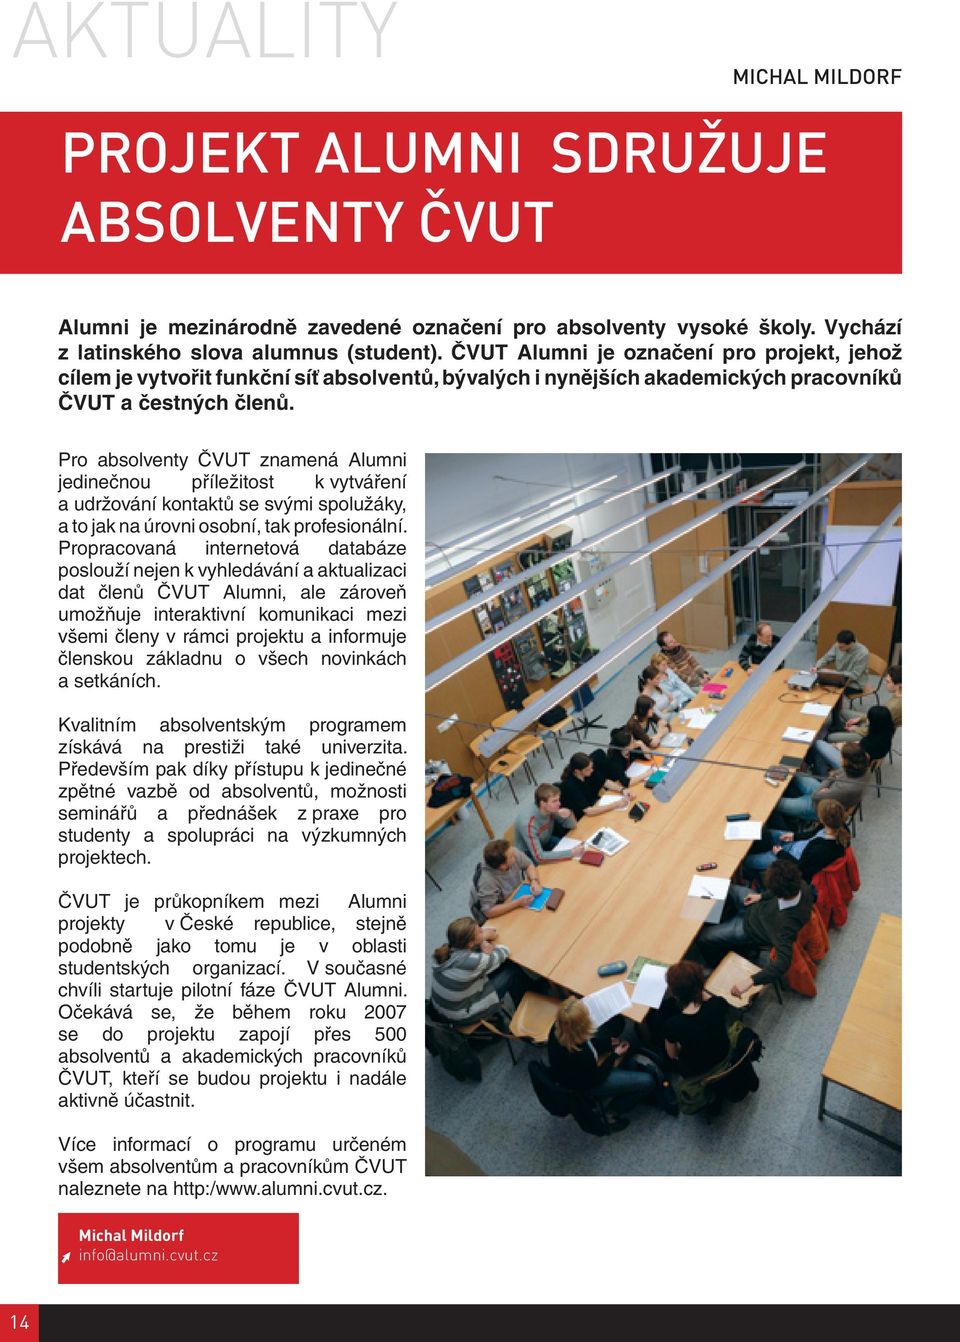 Pro absolventy ČVUT znamená Alumni jedinečnou příležitost k vytváření a udržování kontaktů se svými spolužáky, a to jak na úrovni osobní, tak profesionální.